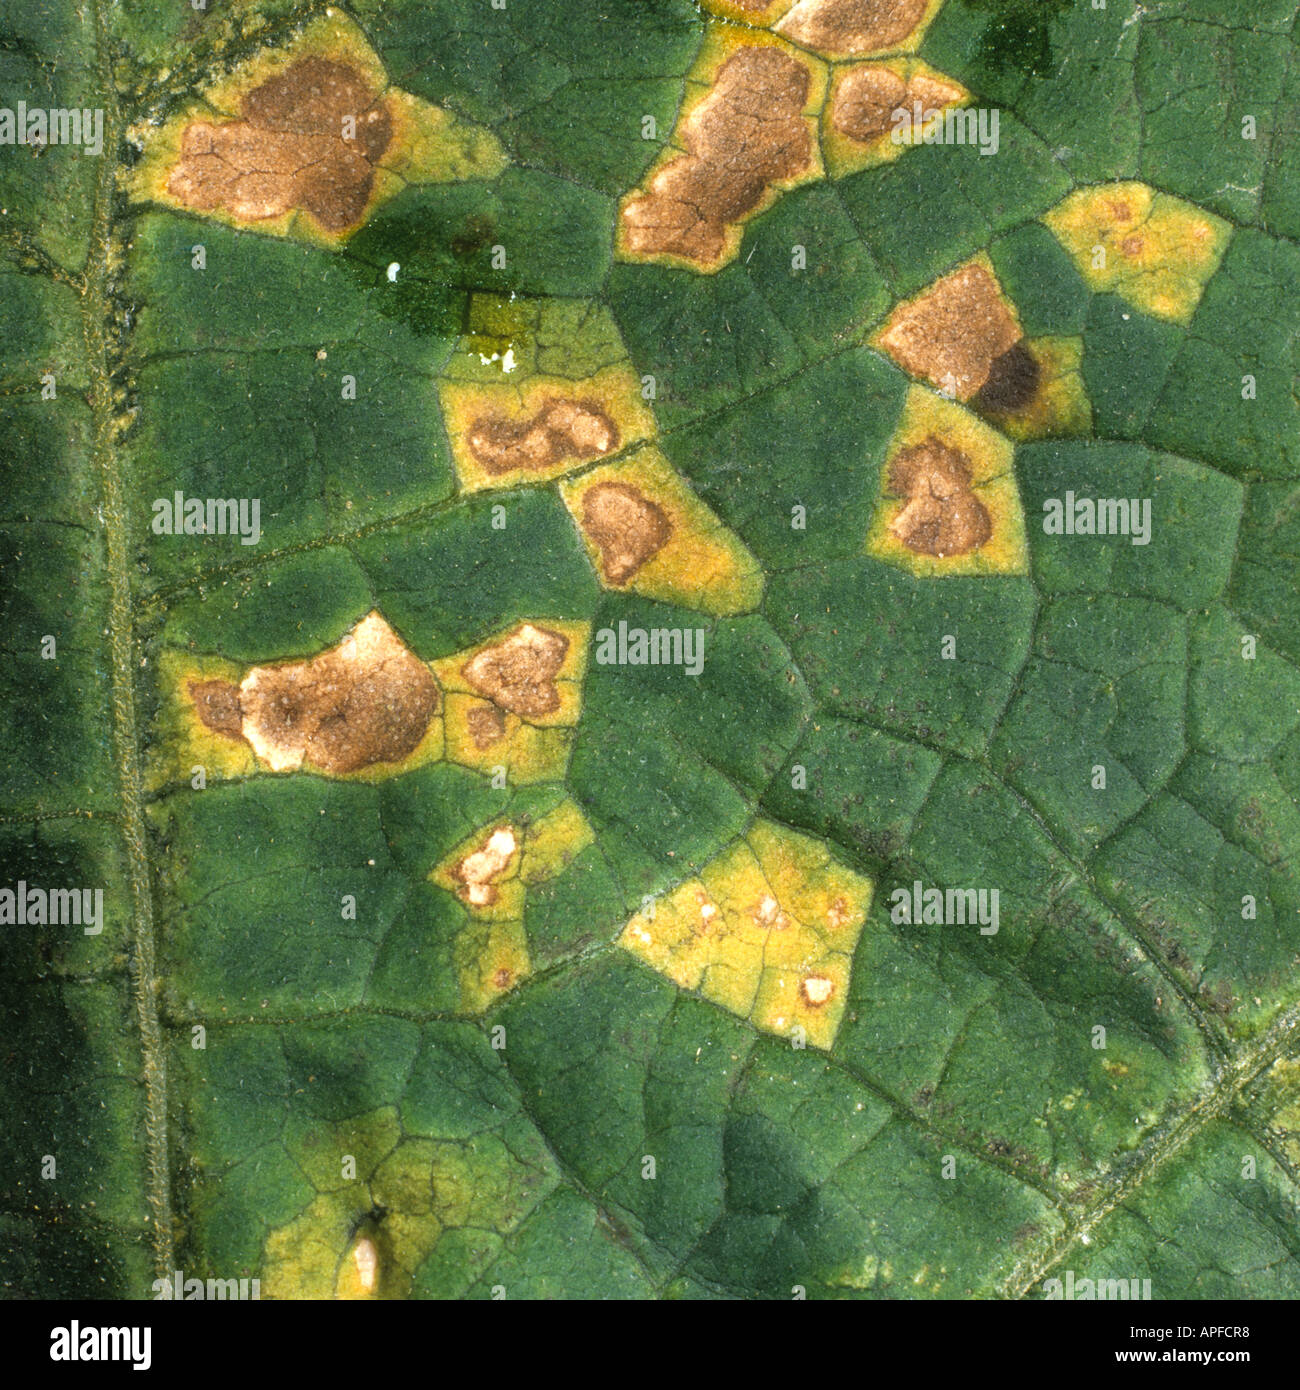 Lésions angulaires des taches foliaires (Pseudomonas syringae lacrymans) sur une feuille de courge Banque D'Images